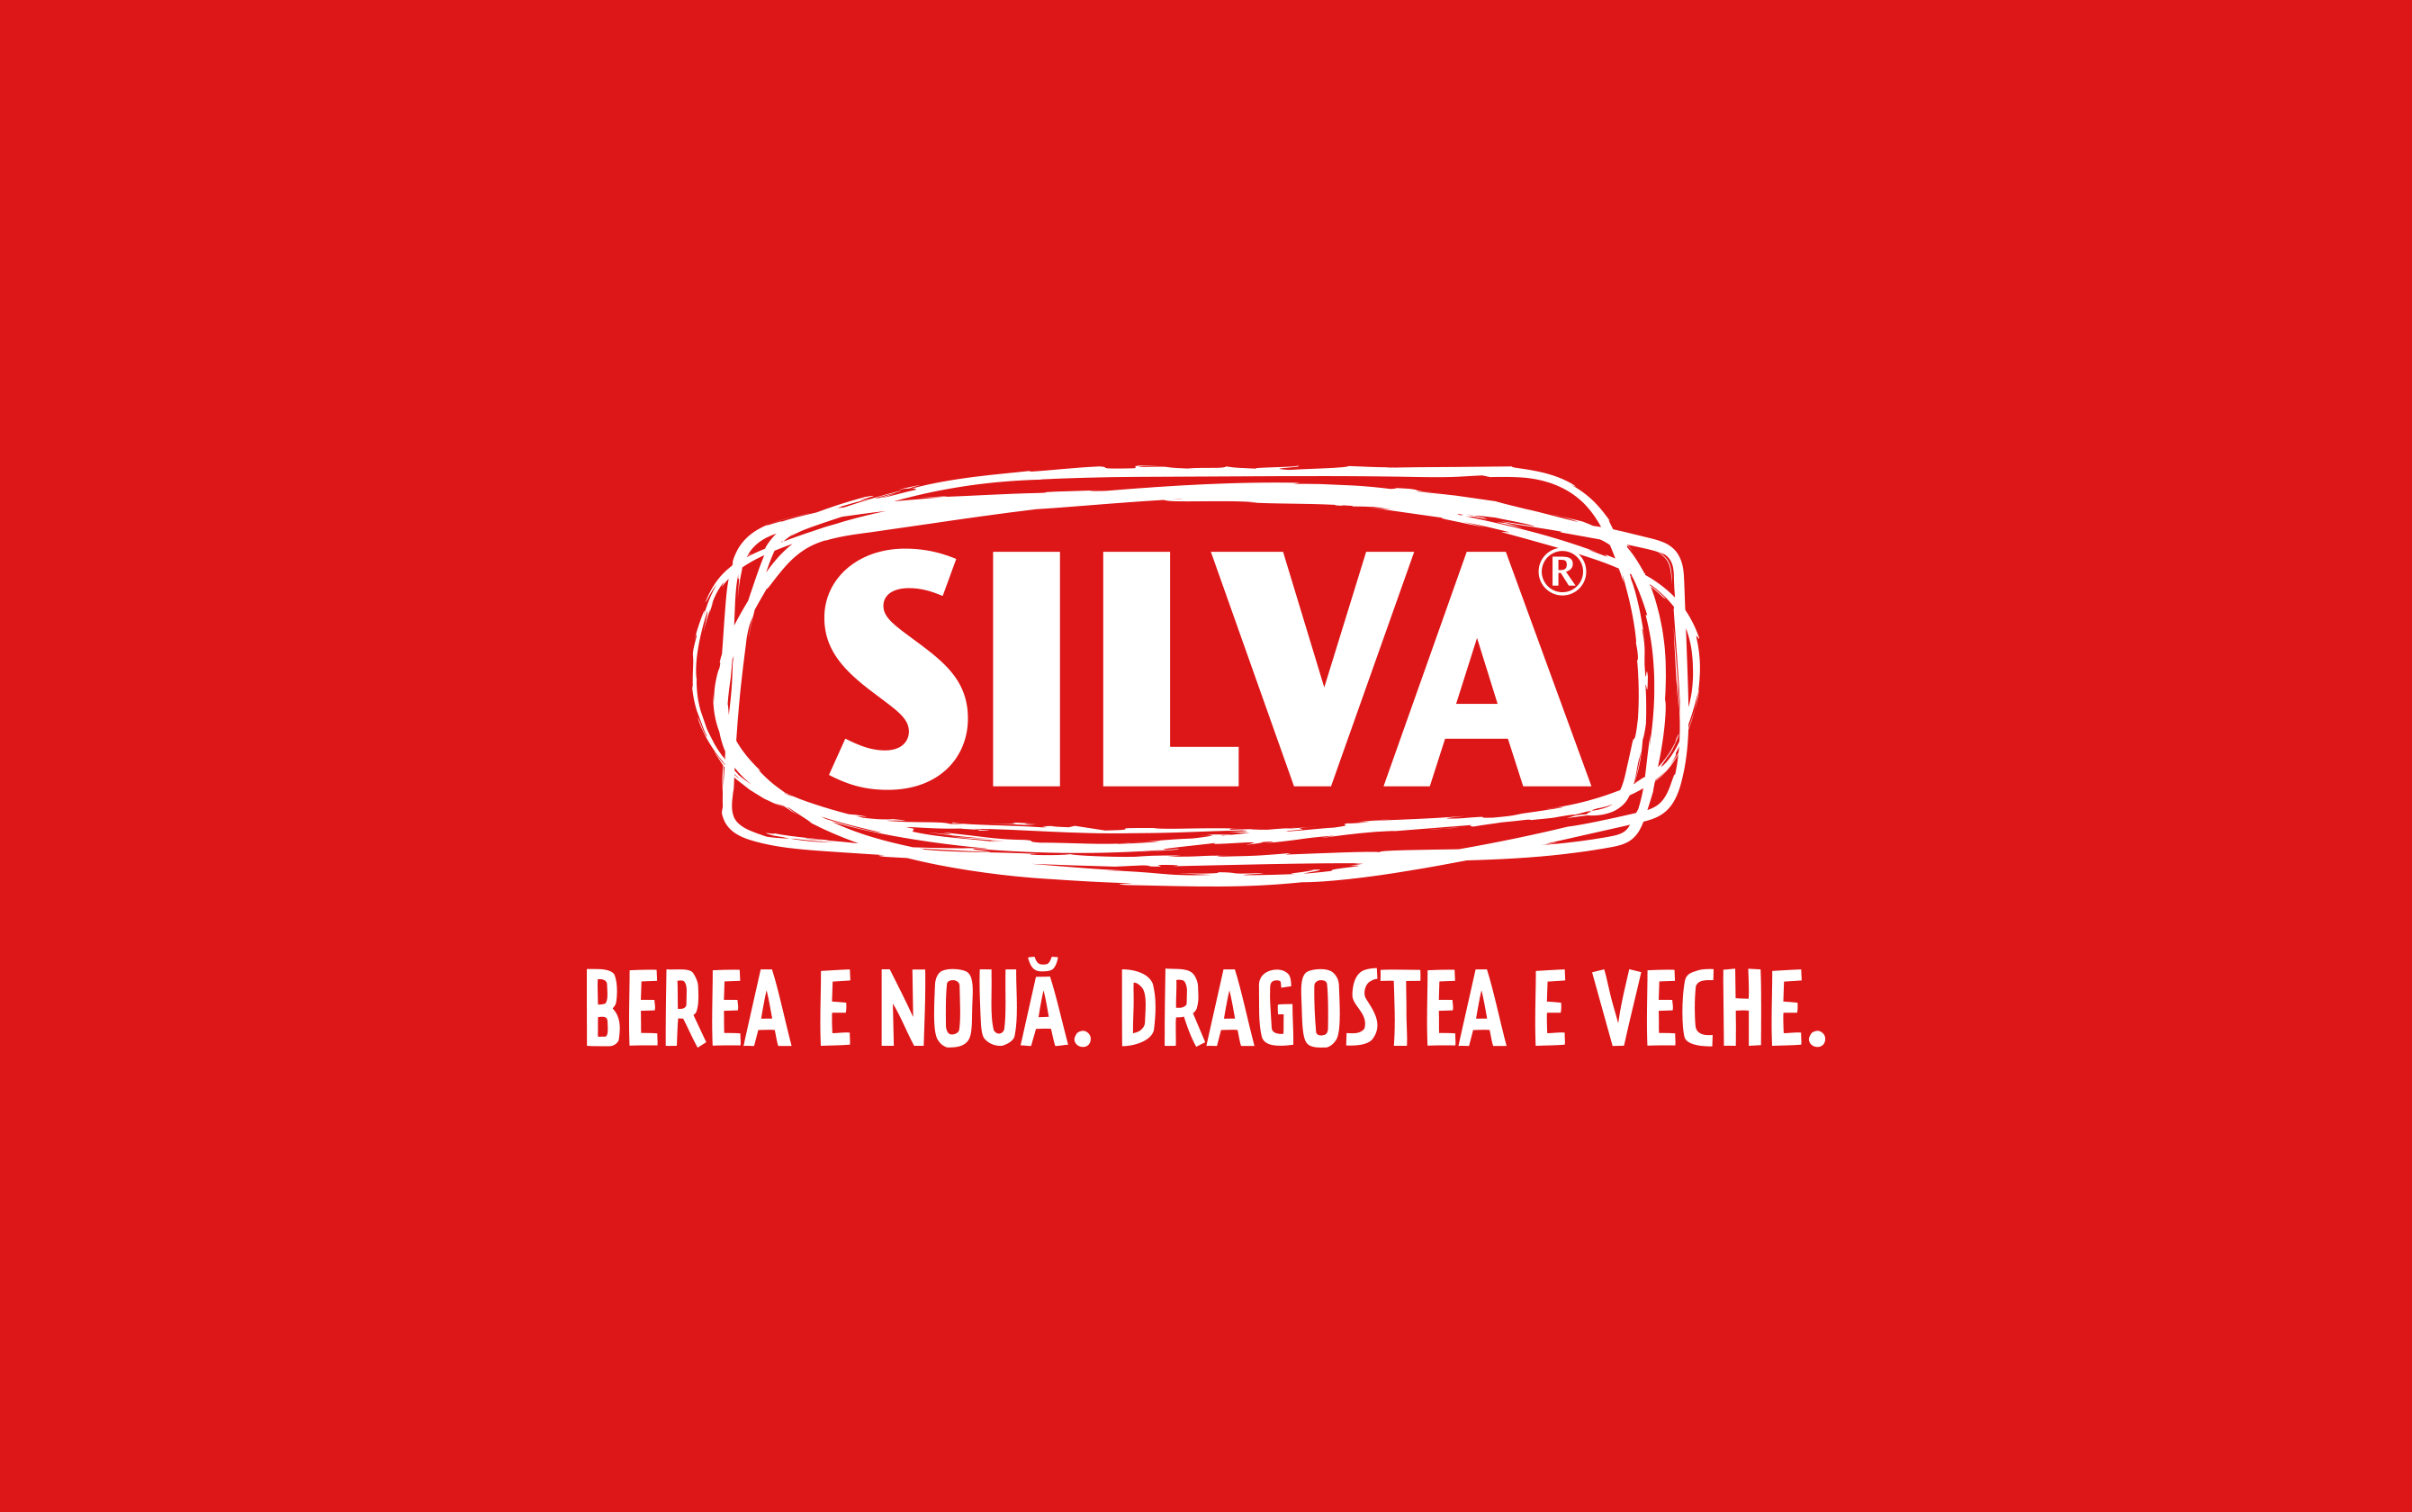 Silva-New-Logo-Design-by-Ciprian-Badalan